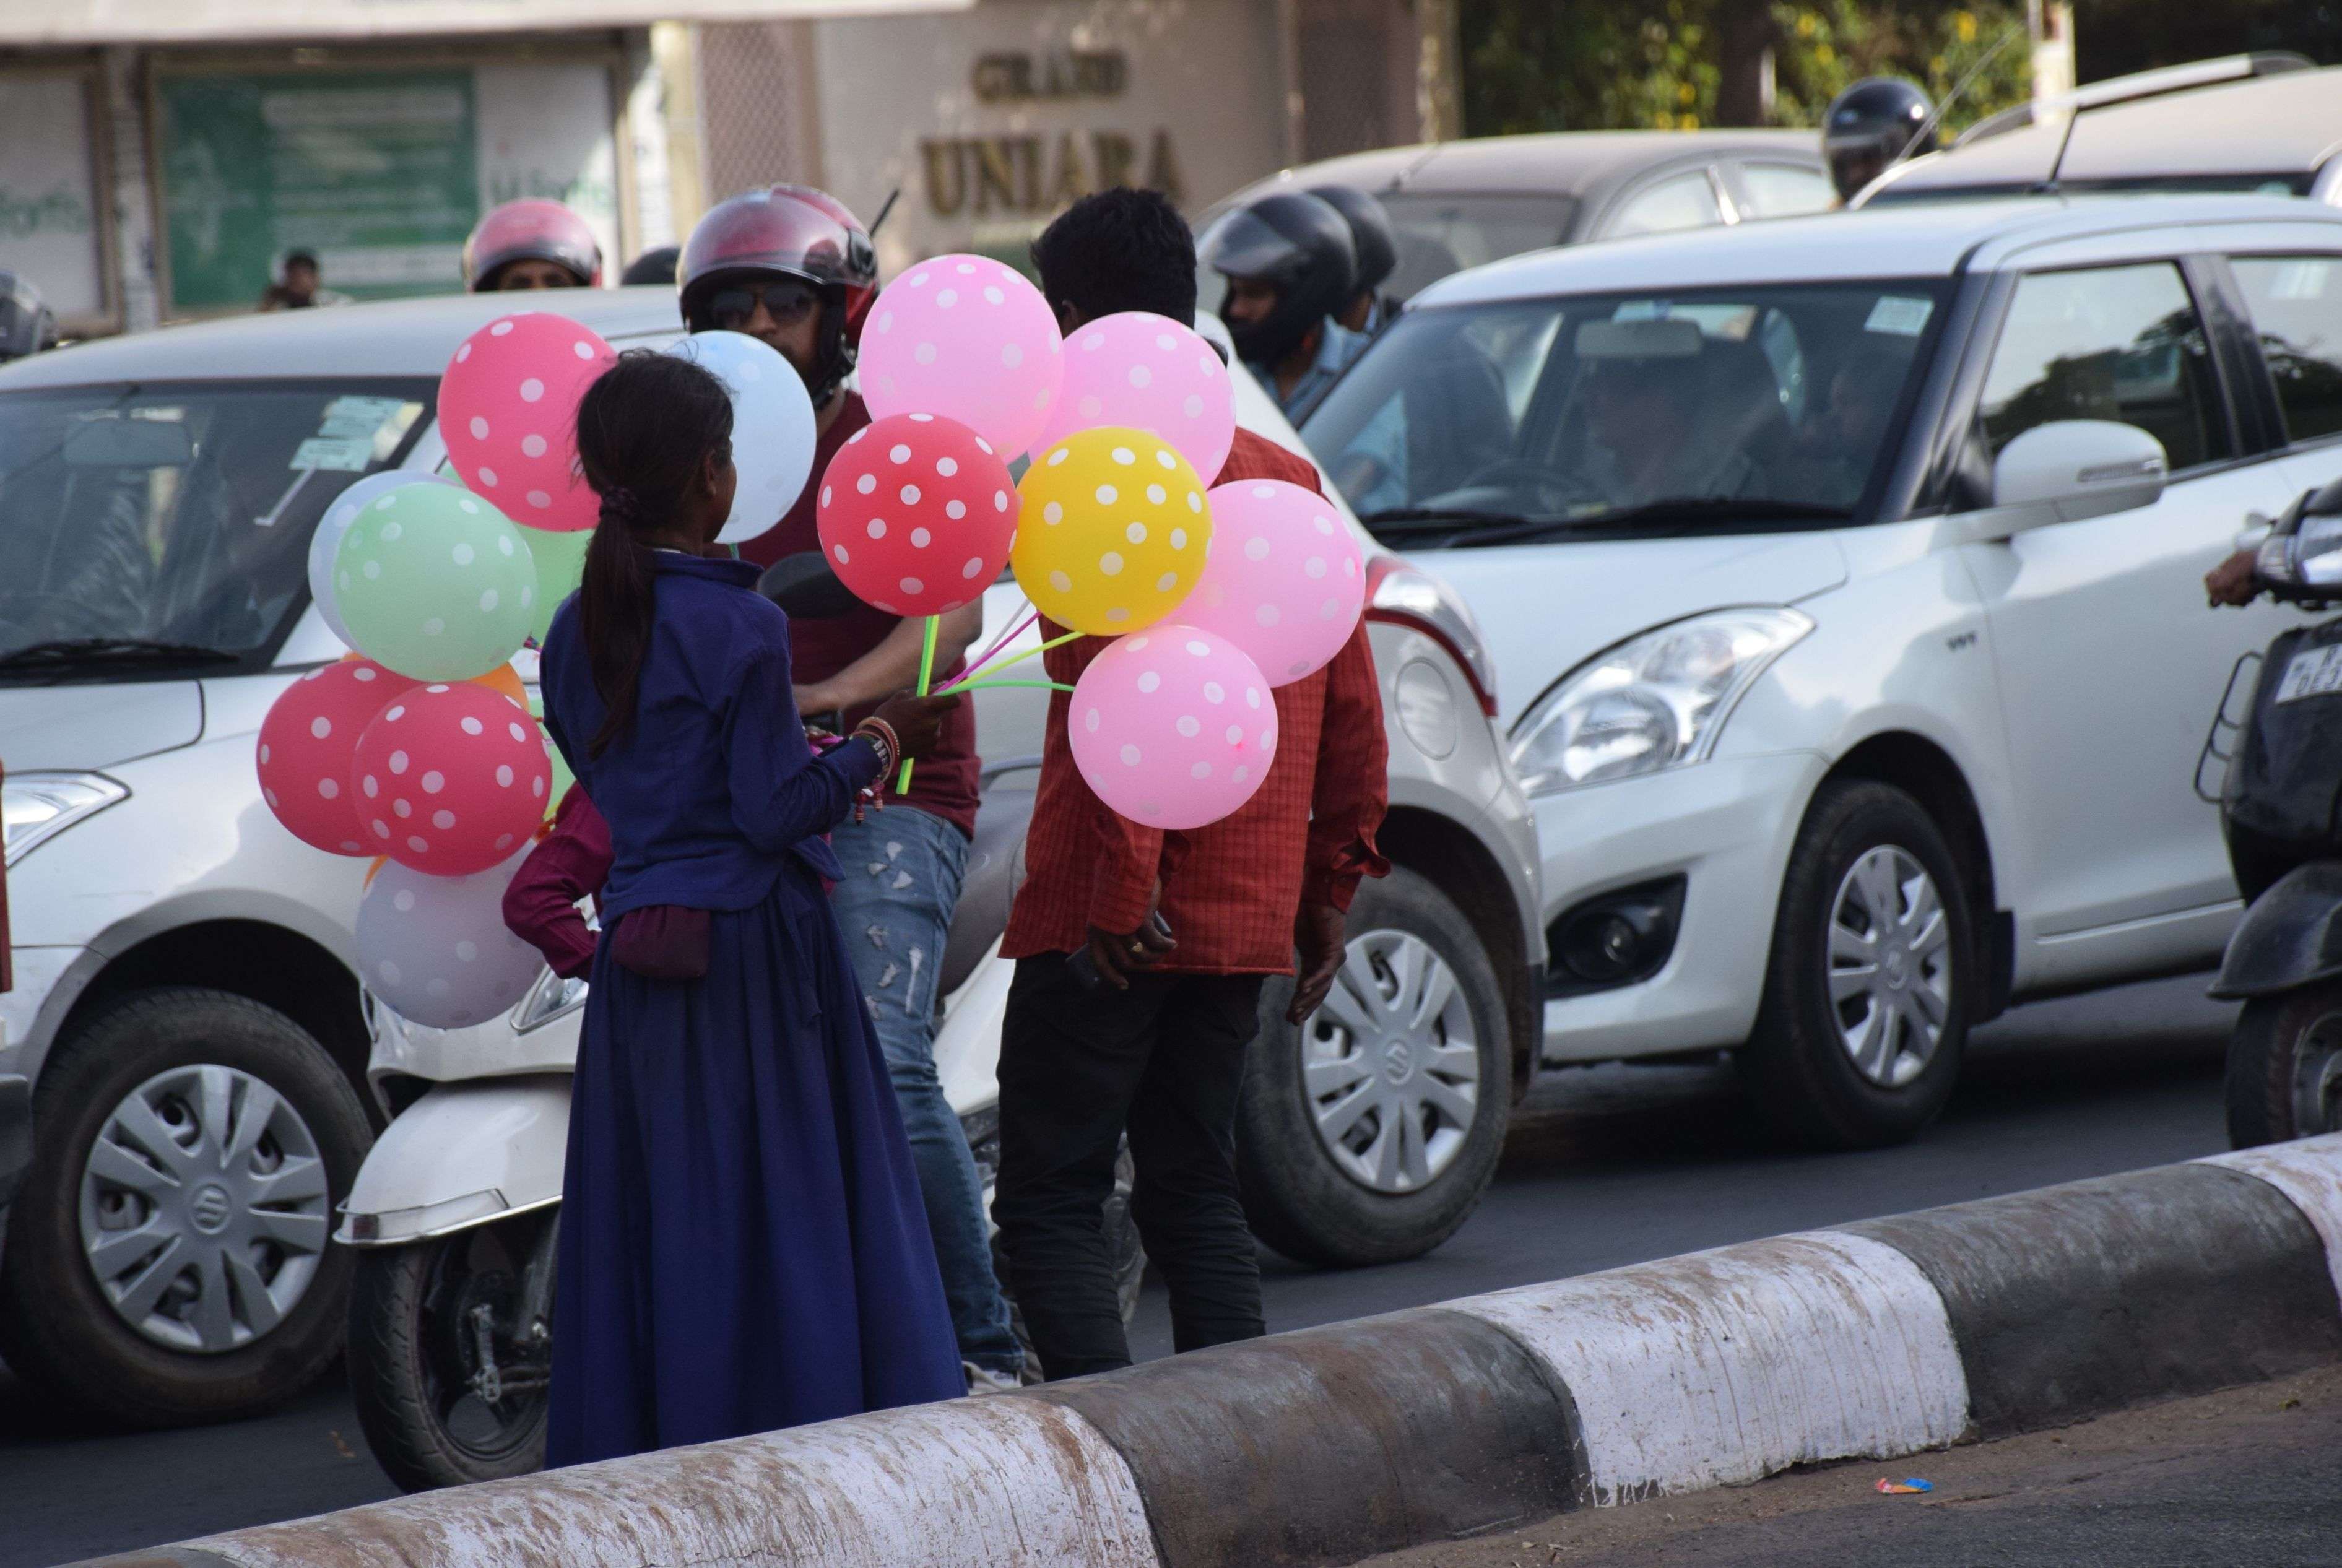 जयपुर के तीन मूर्ति सर्कल पर रोड़ के बीच गुब्बारे बेचते बच्चों से कभी भी हादसा हो
सकता है देखें तस्वीरों में